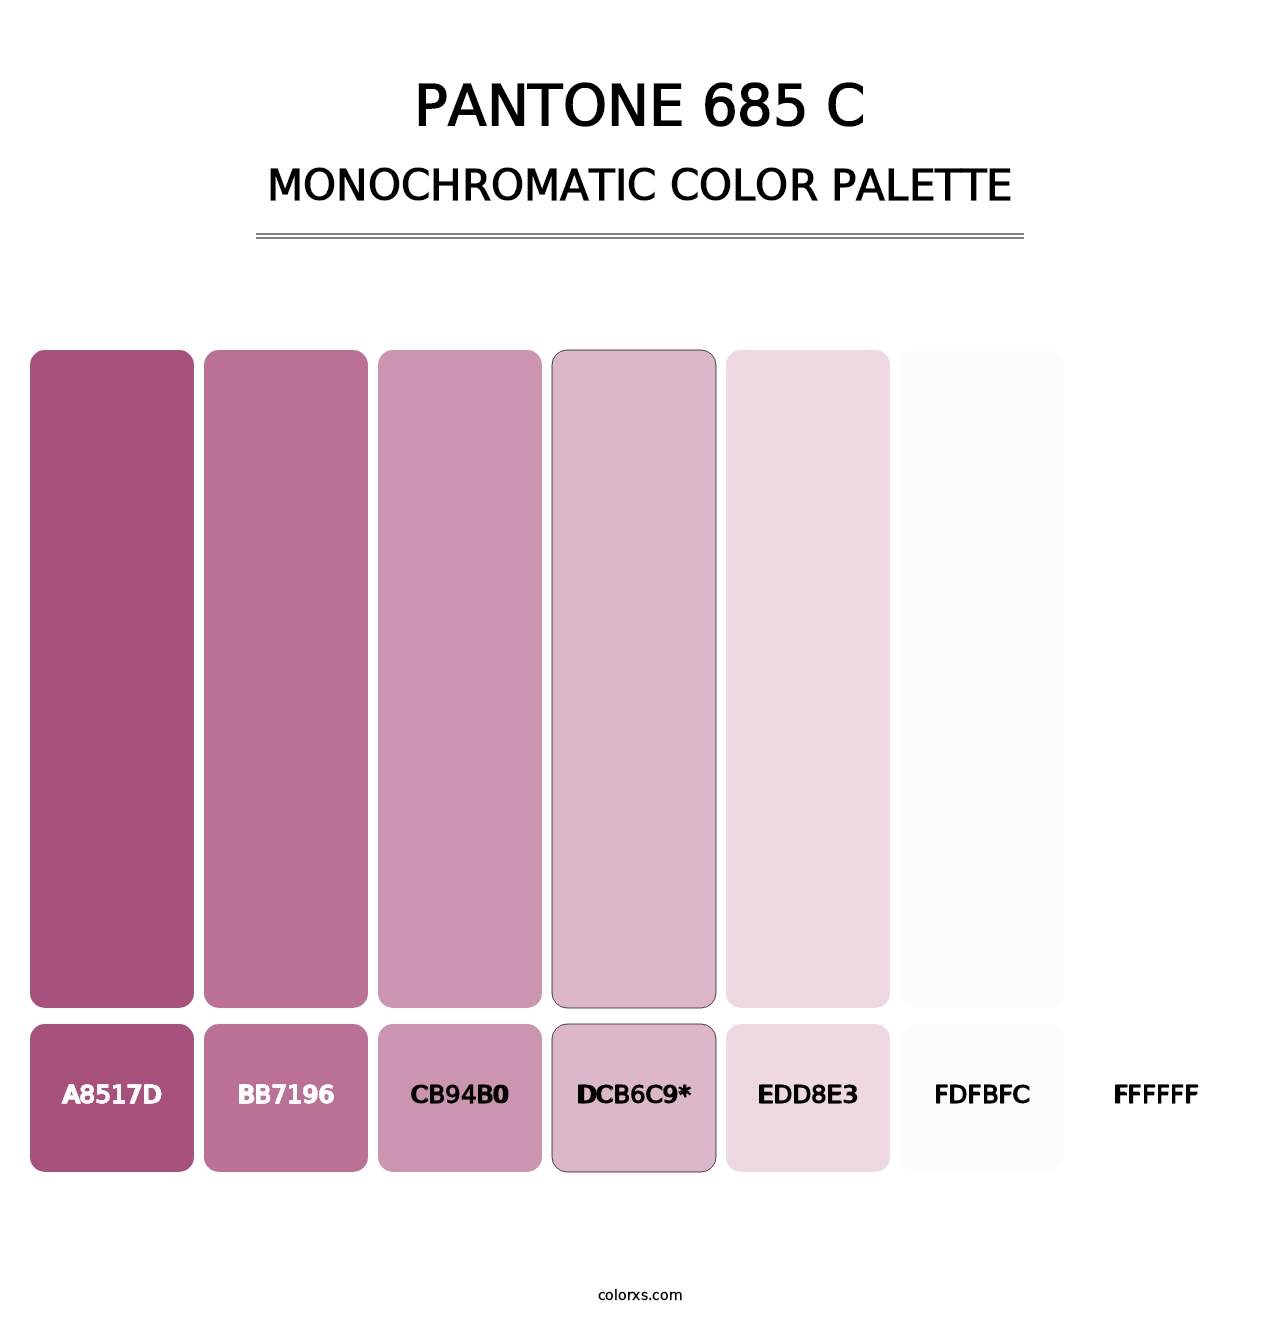 PANTONE 685 C - Monochromatic Color Palette